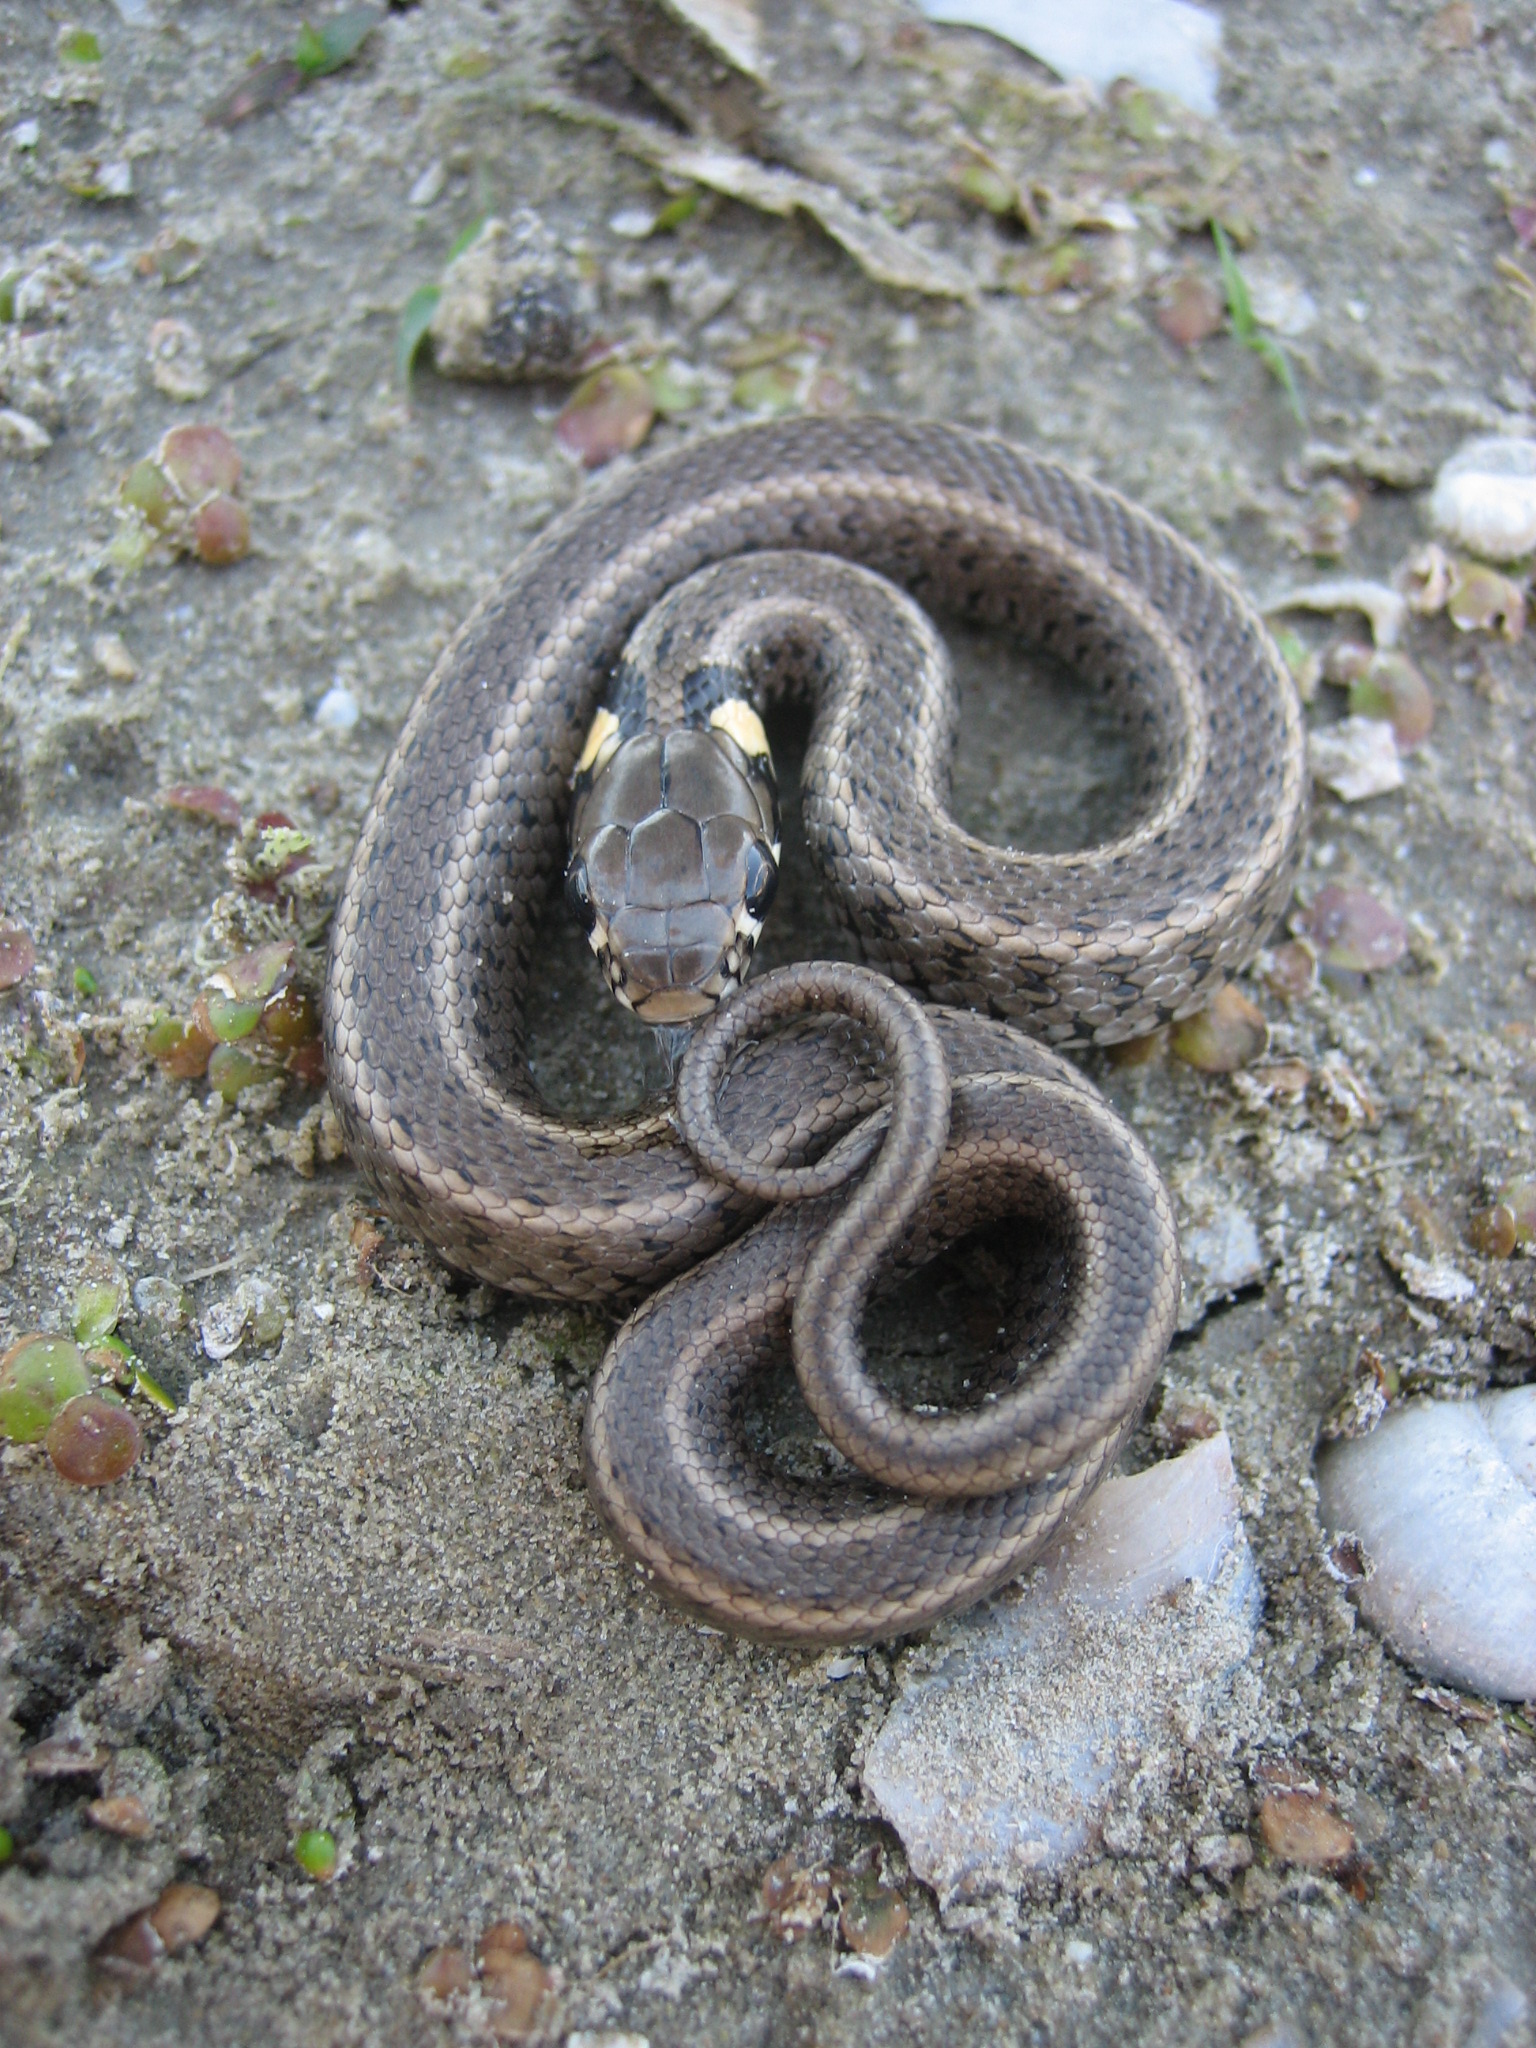 Reptiles - Grass snake